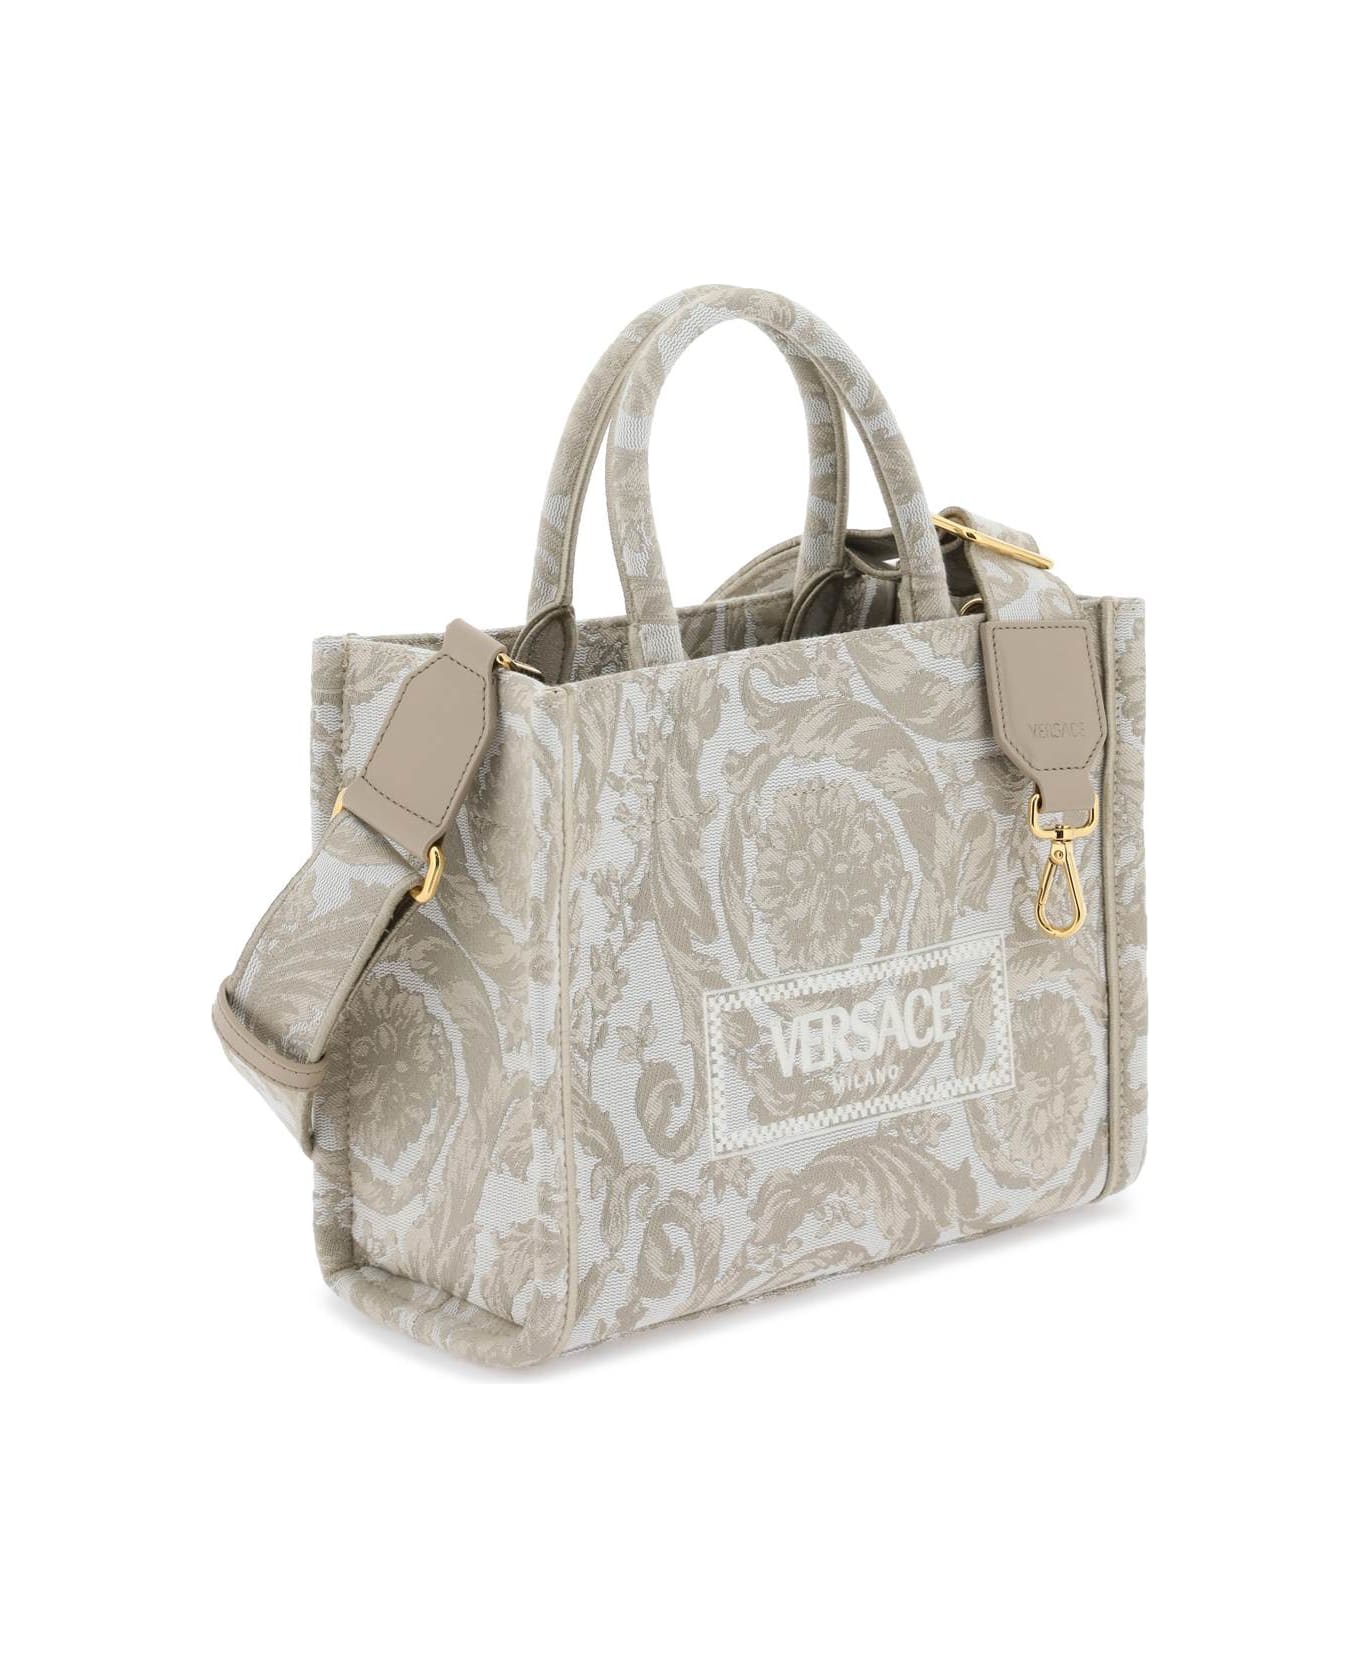 Versace Two-tone Fabric Bag - BEIGE BEIGE VERSACE GOLD